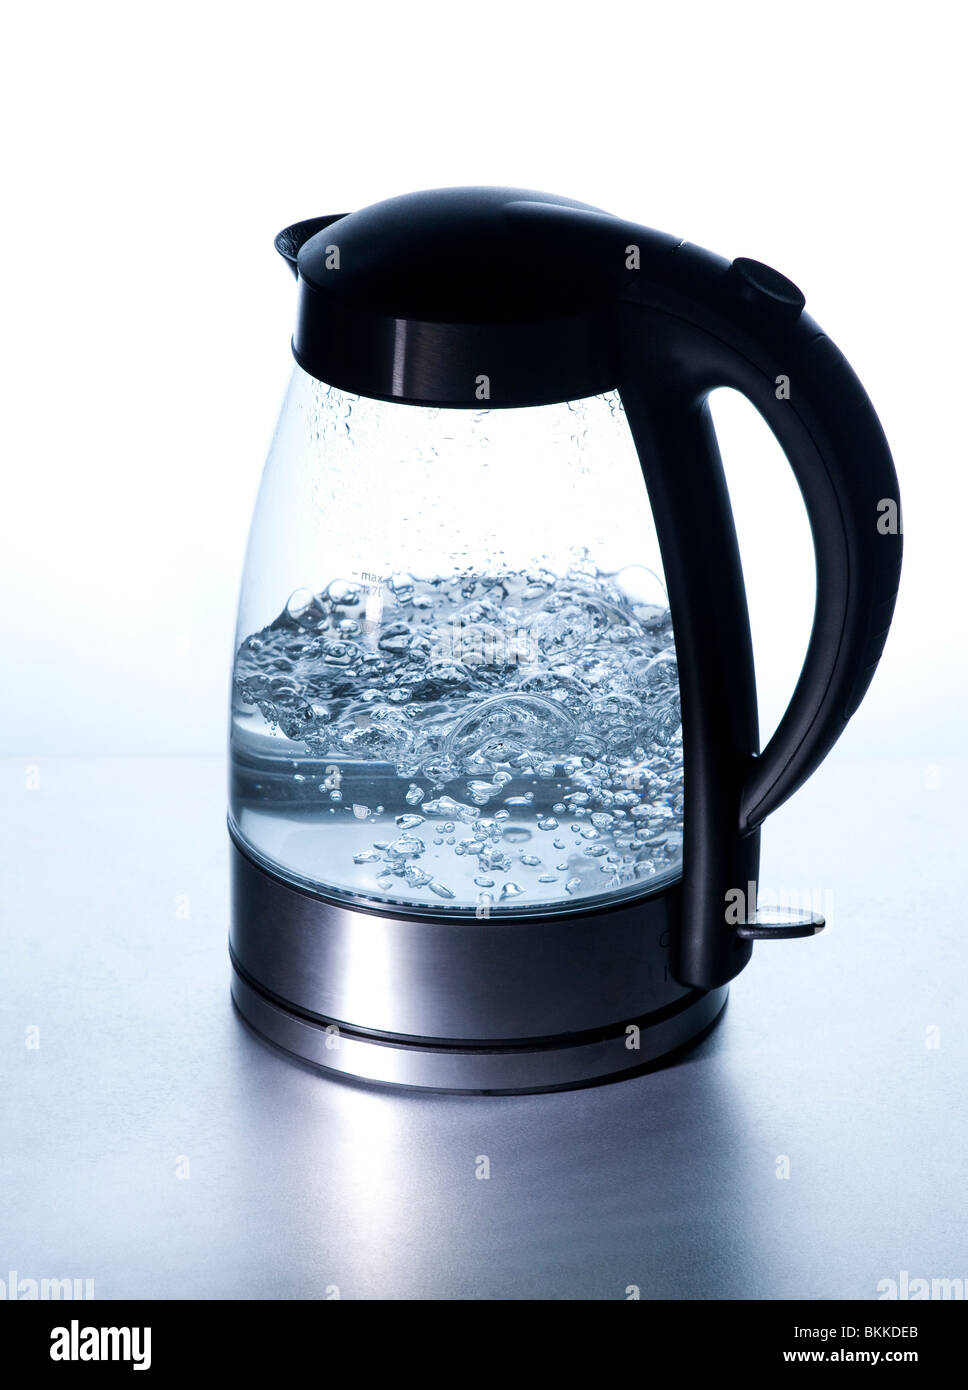 Bouilloire électrique moderne de l'eau bouillante à l'aide de Schott Duran verre borosilicate résistant Banque D'Images